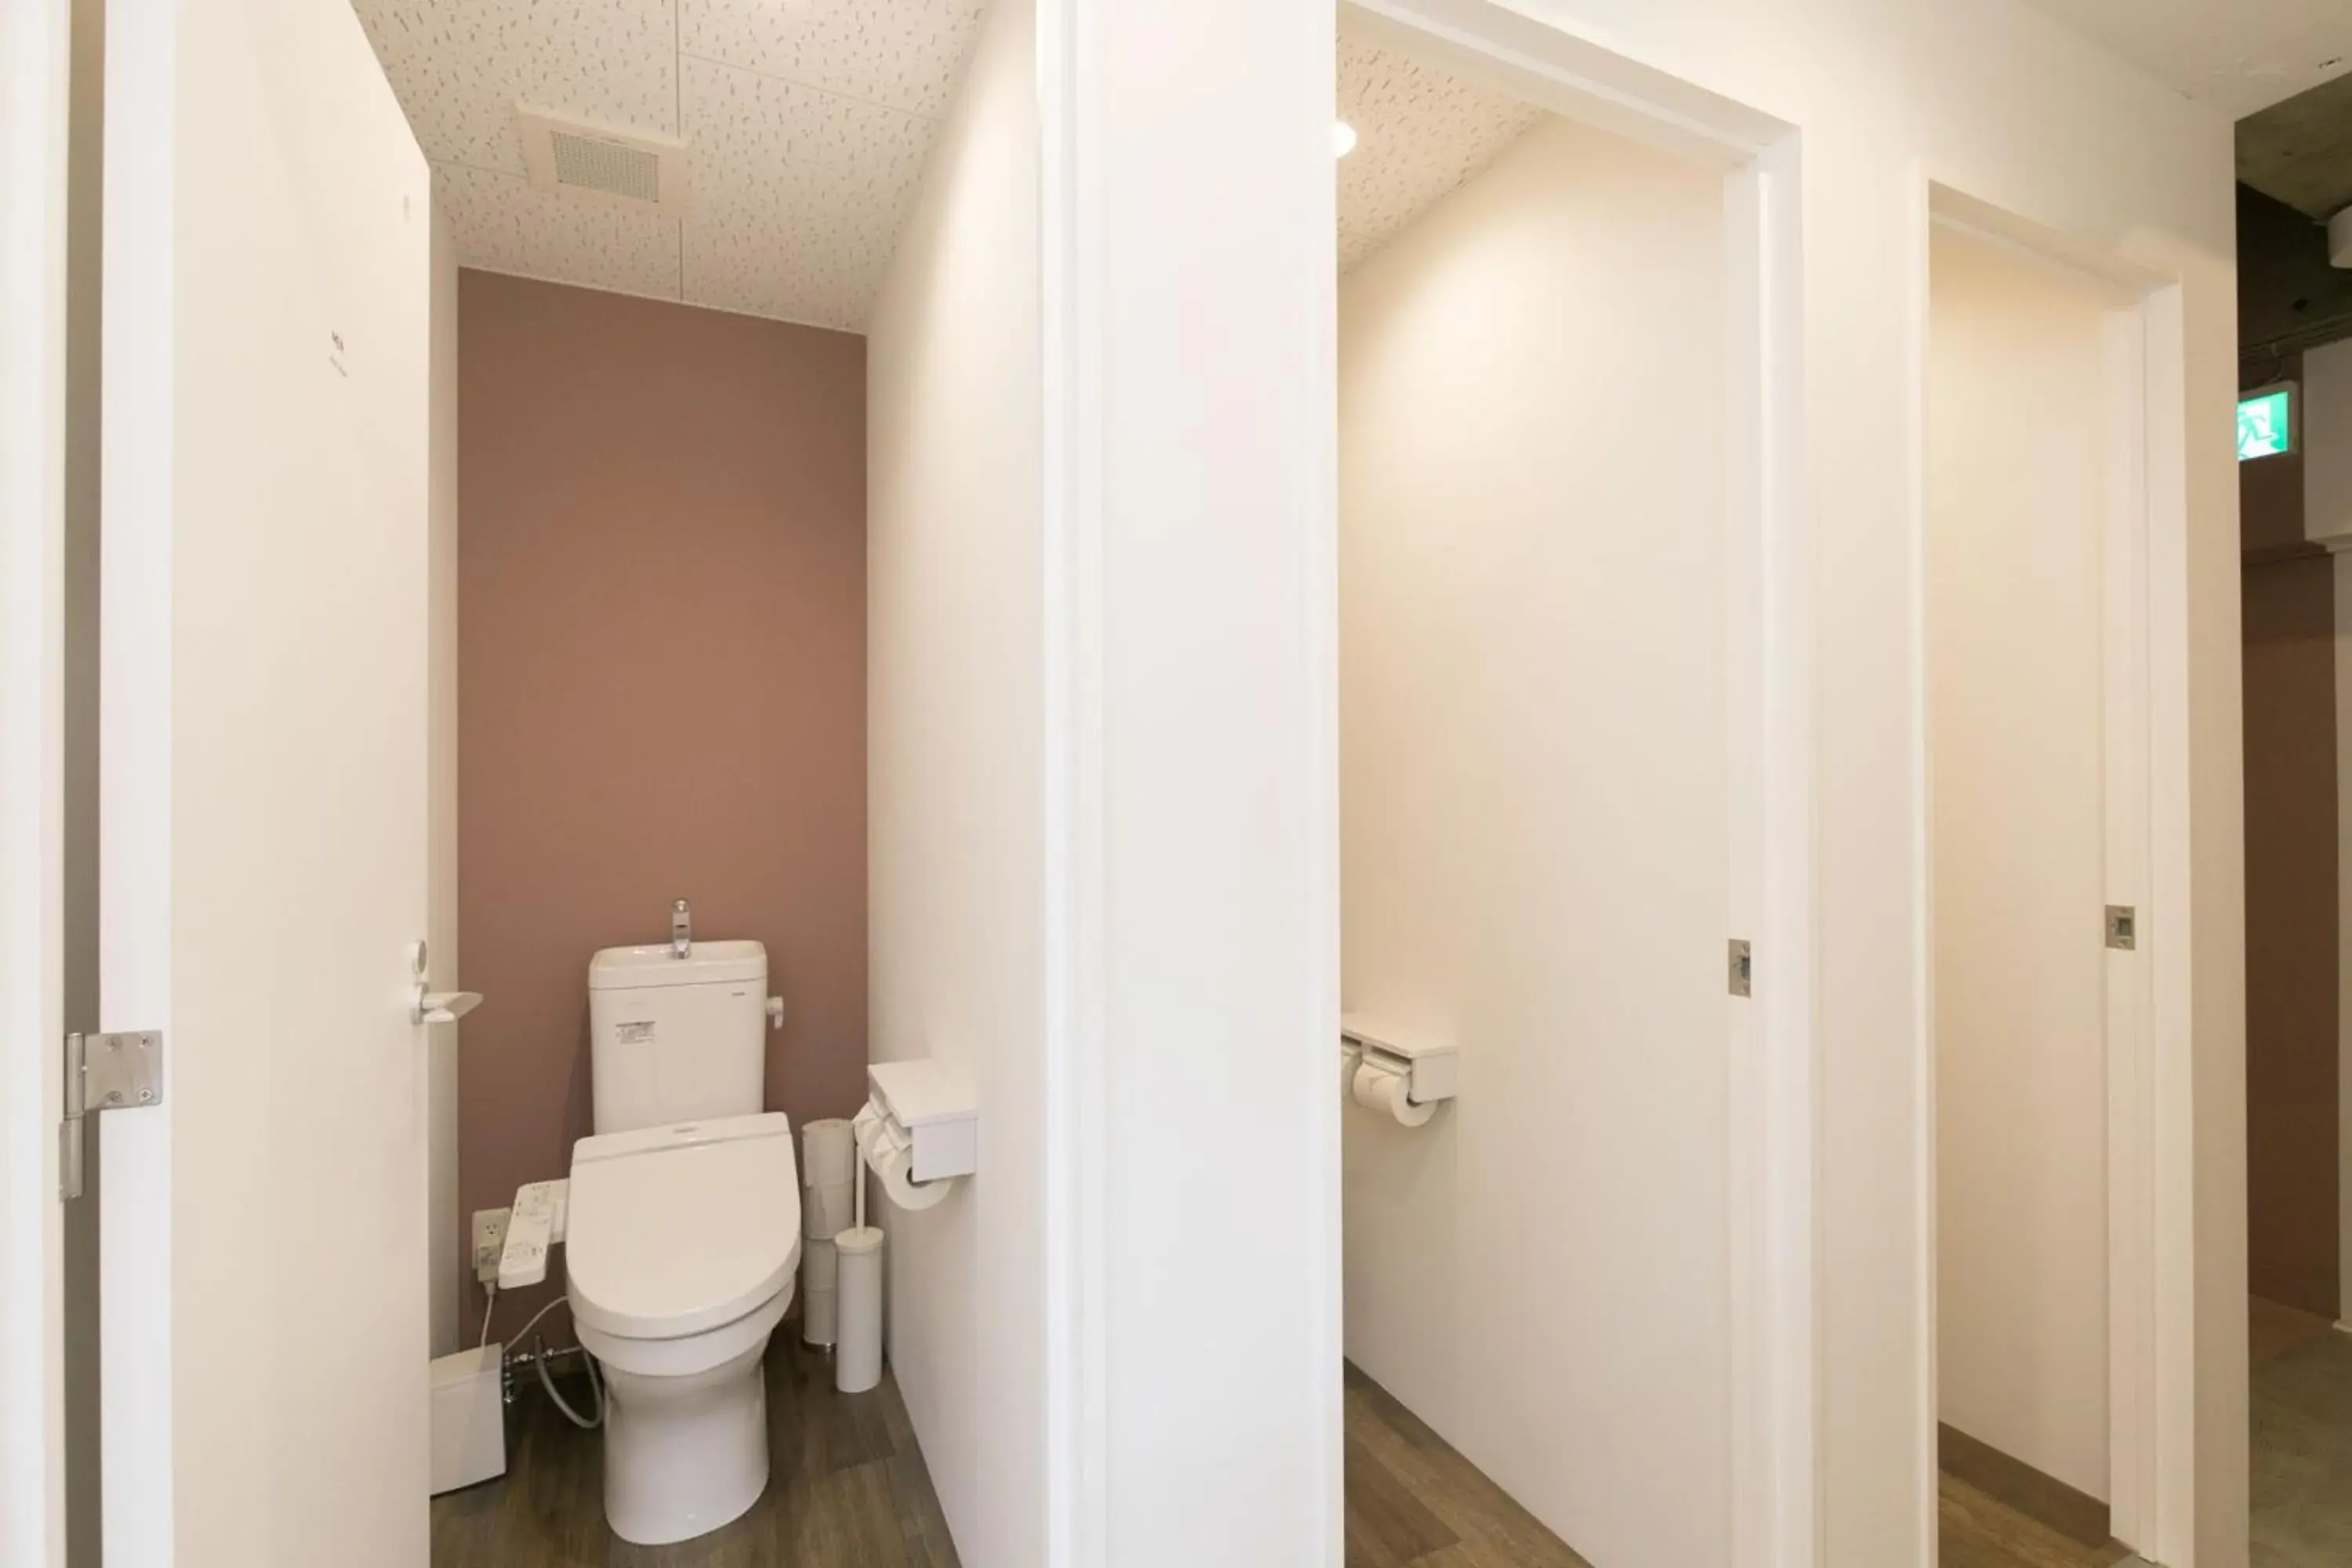 Area and facilities, Bathroom in hostel DEN